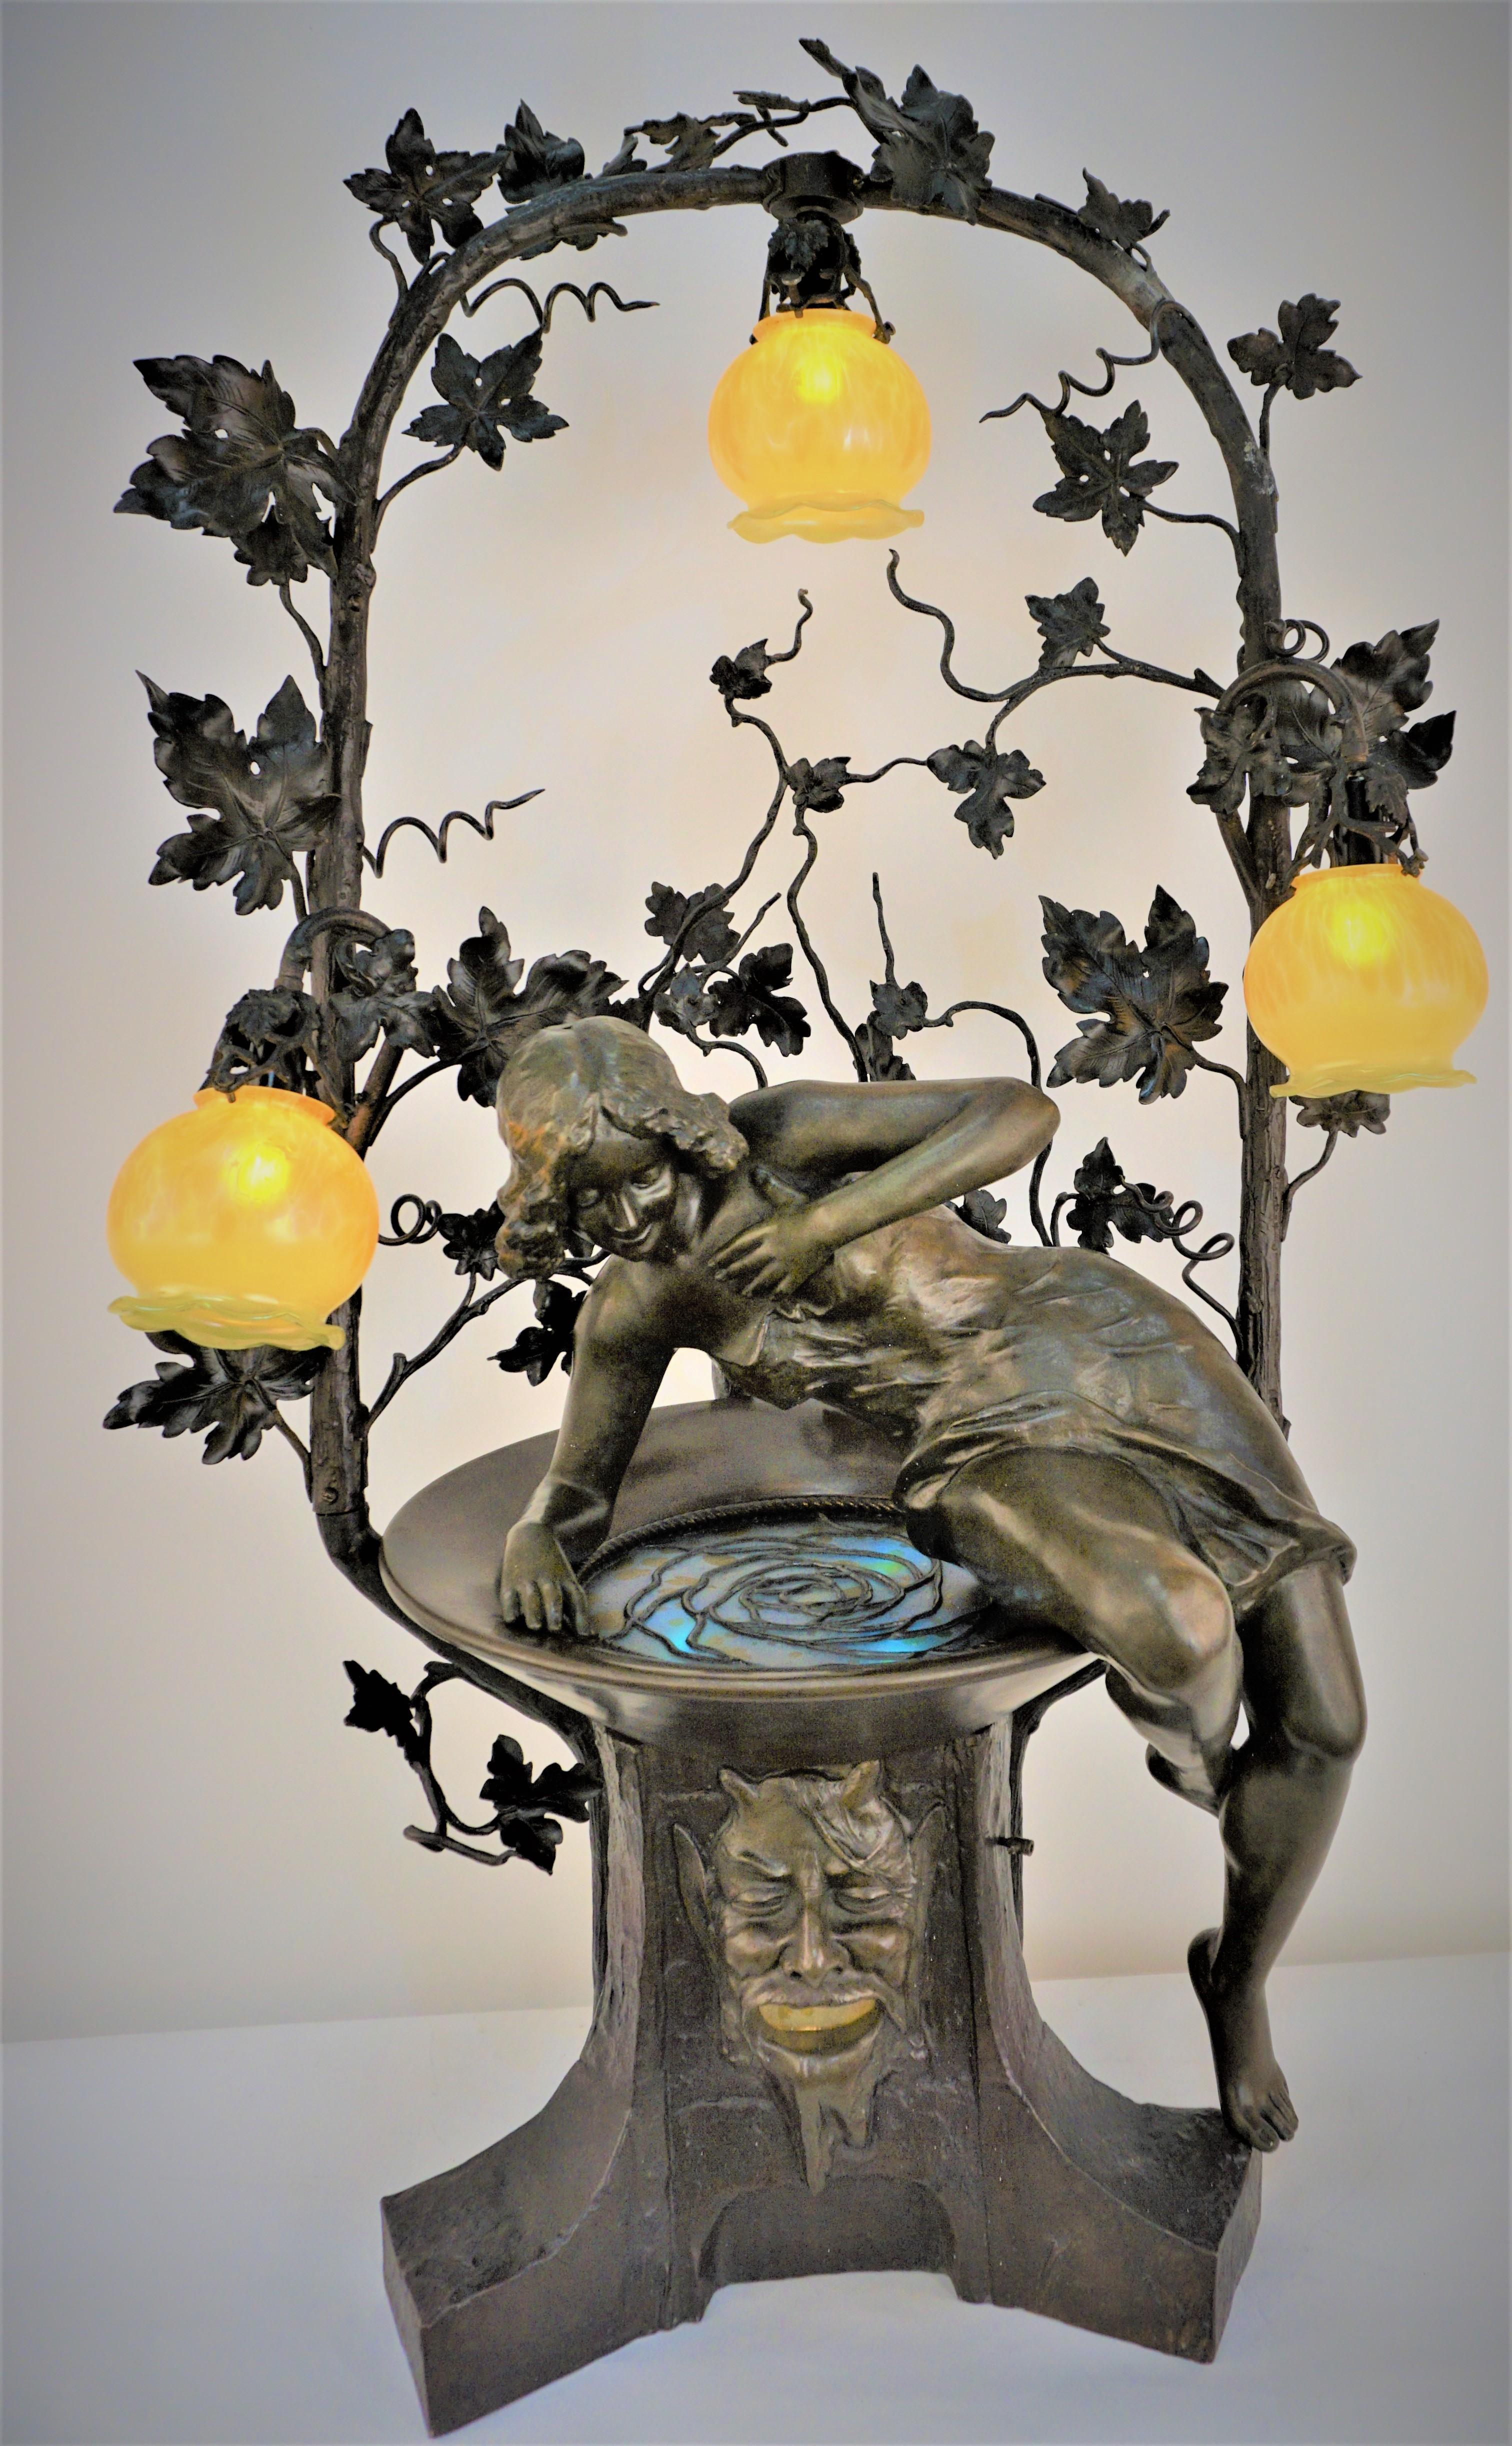 Atemberaubende große Jugendstil-Bronze-Wasser-Brunnen Kunst Glas Tischlampe.
Sie betrachtet ihr Bild im Wasser (Kunstglas mit Licht darunter).
Sockel mit Fächergesicht mit geöffnetem Mund und Lichtreflexion durch Kunstglas.